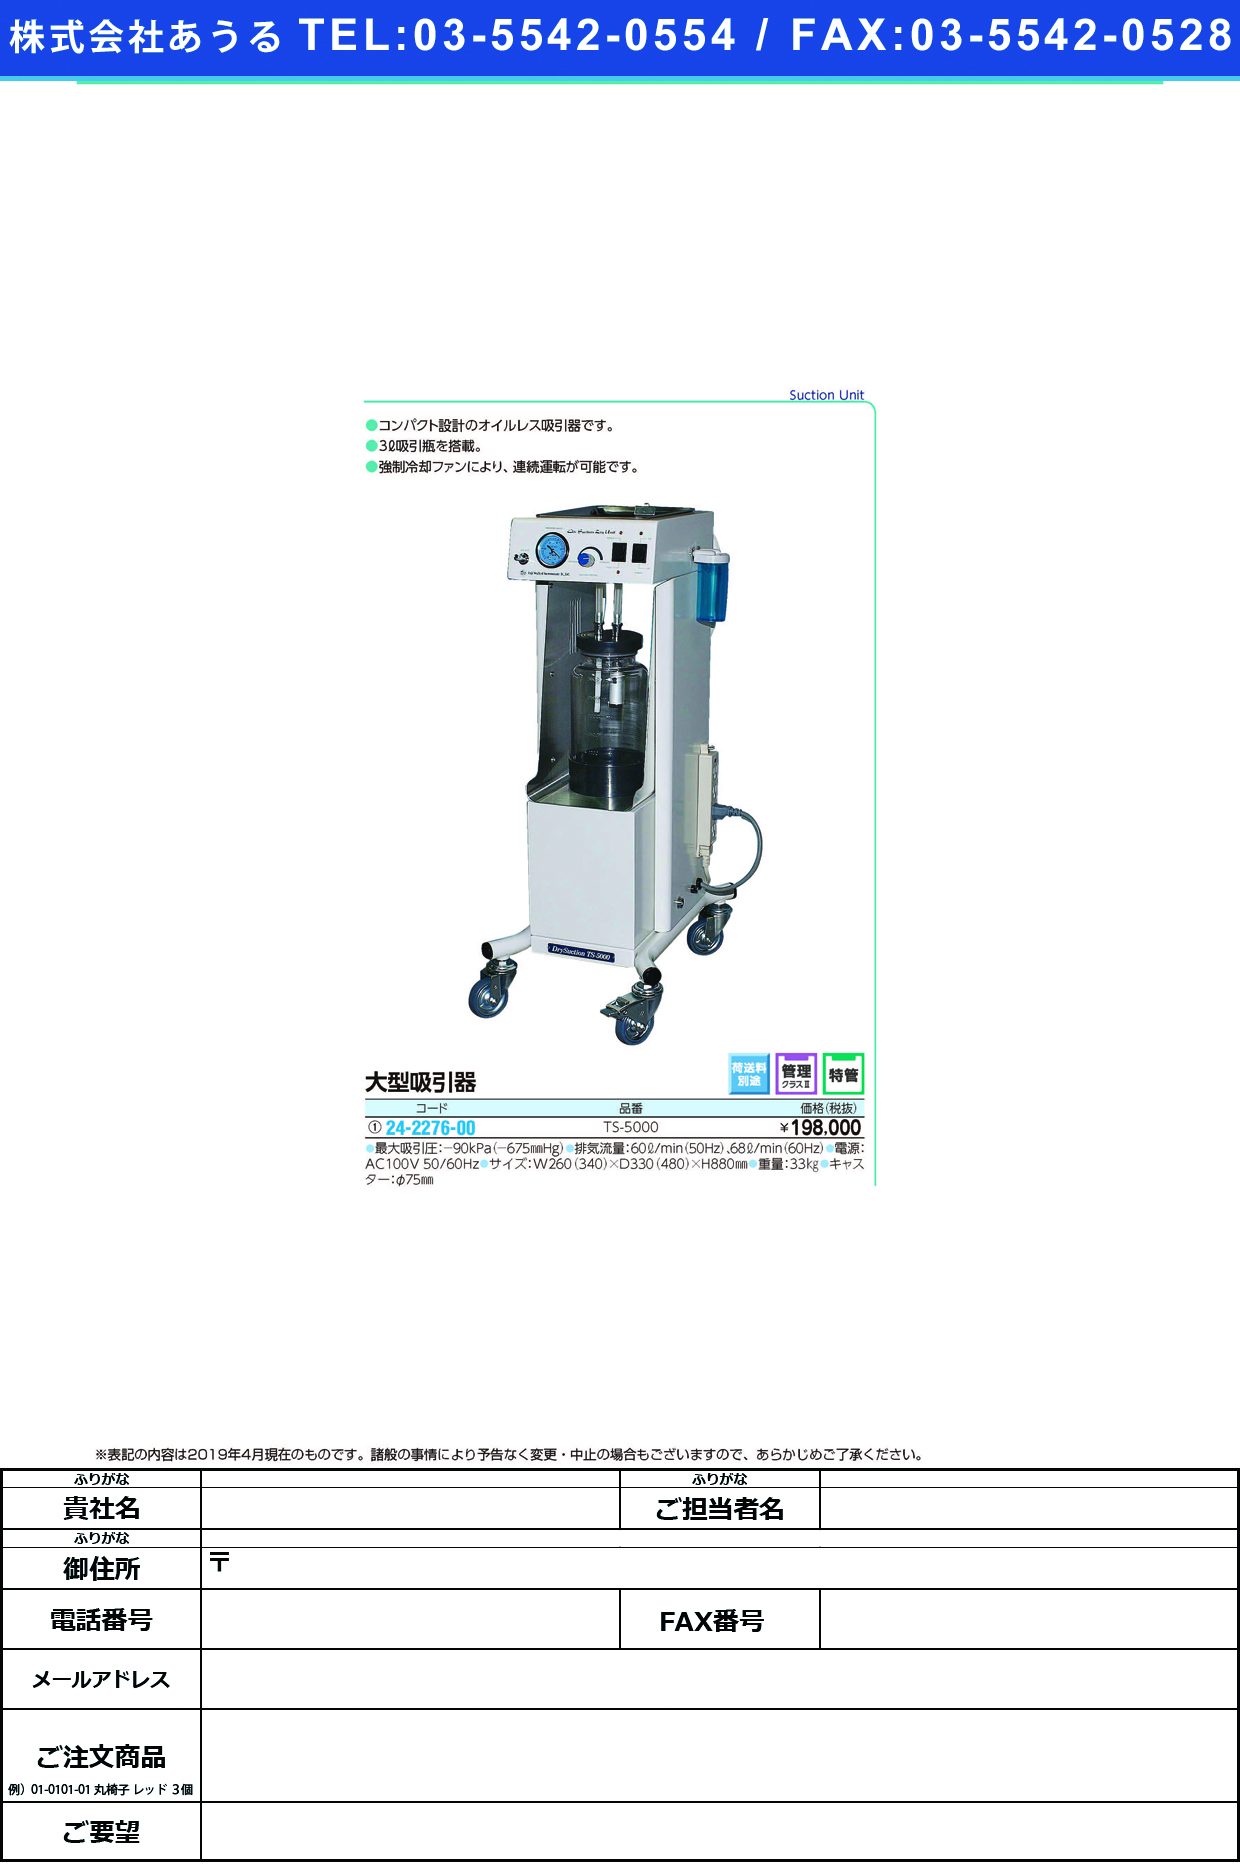 (24-2276-00)大型吸引器 TS-5000 ｵｵｶﾞﾀｷｭｳｲﾝｷ【1台単位】【2019年カタログ商品】